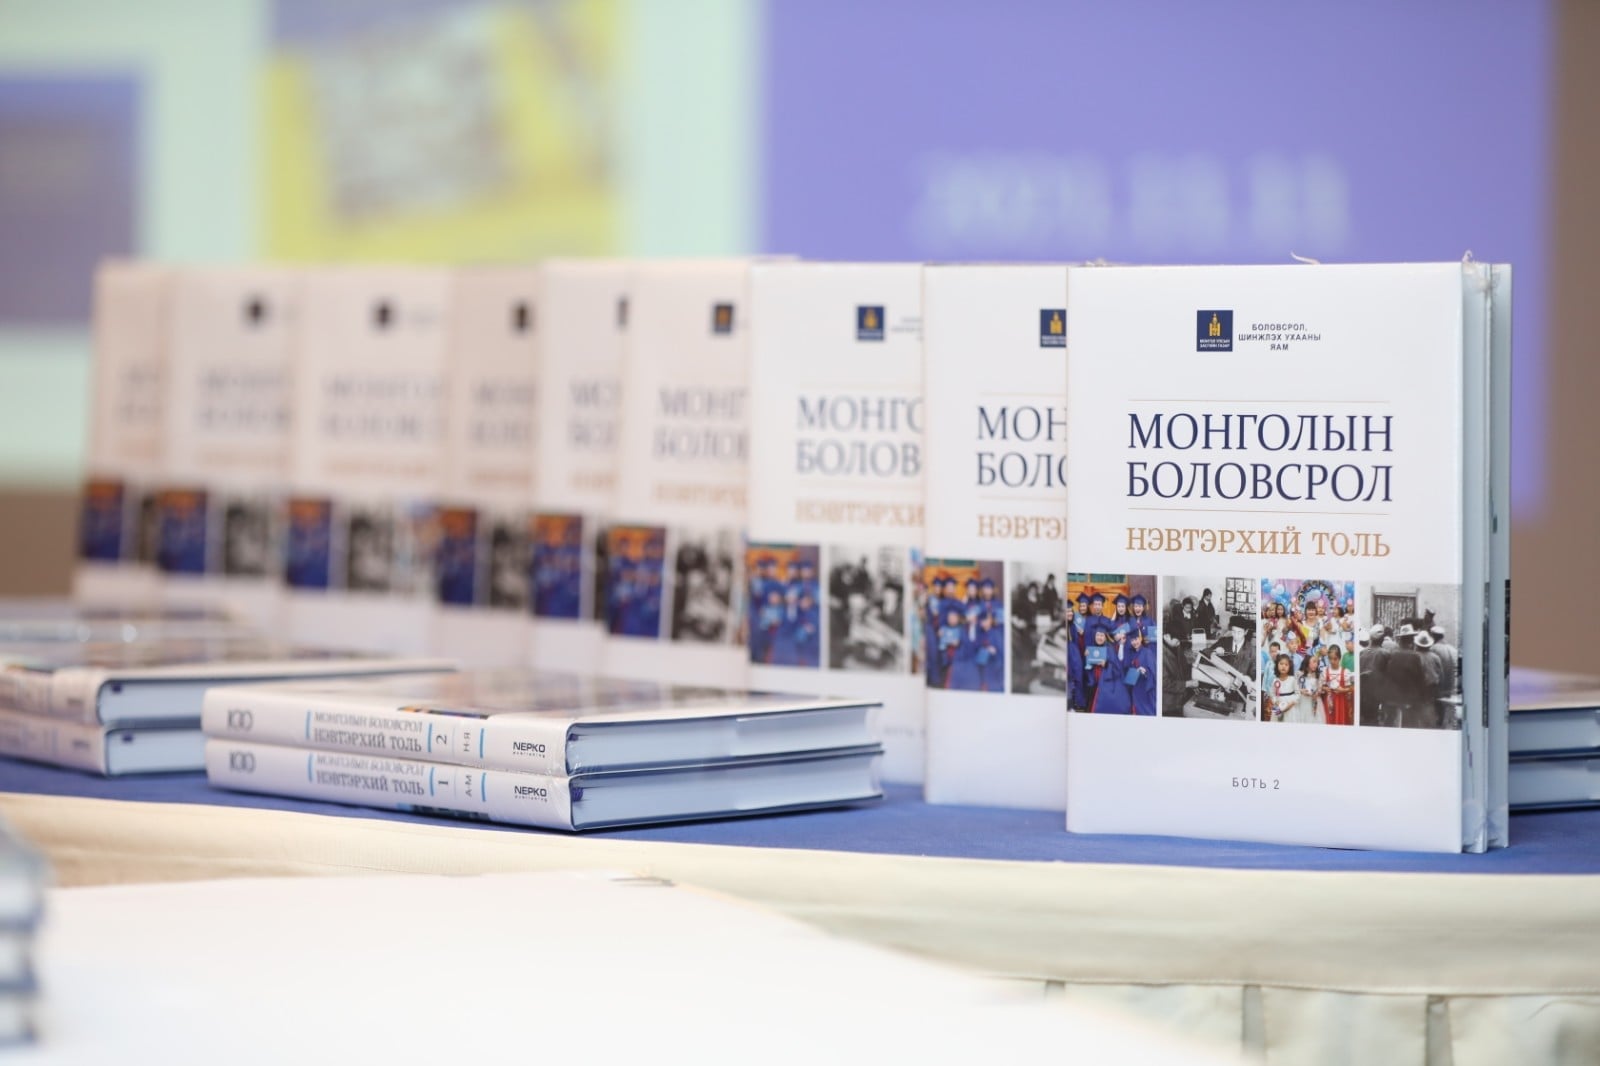 “Монголын боловсрол-100 үйл явдал” ном хэвлэгдлээ